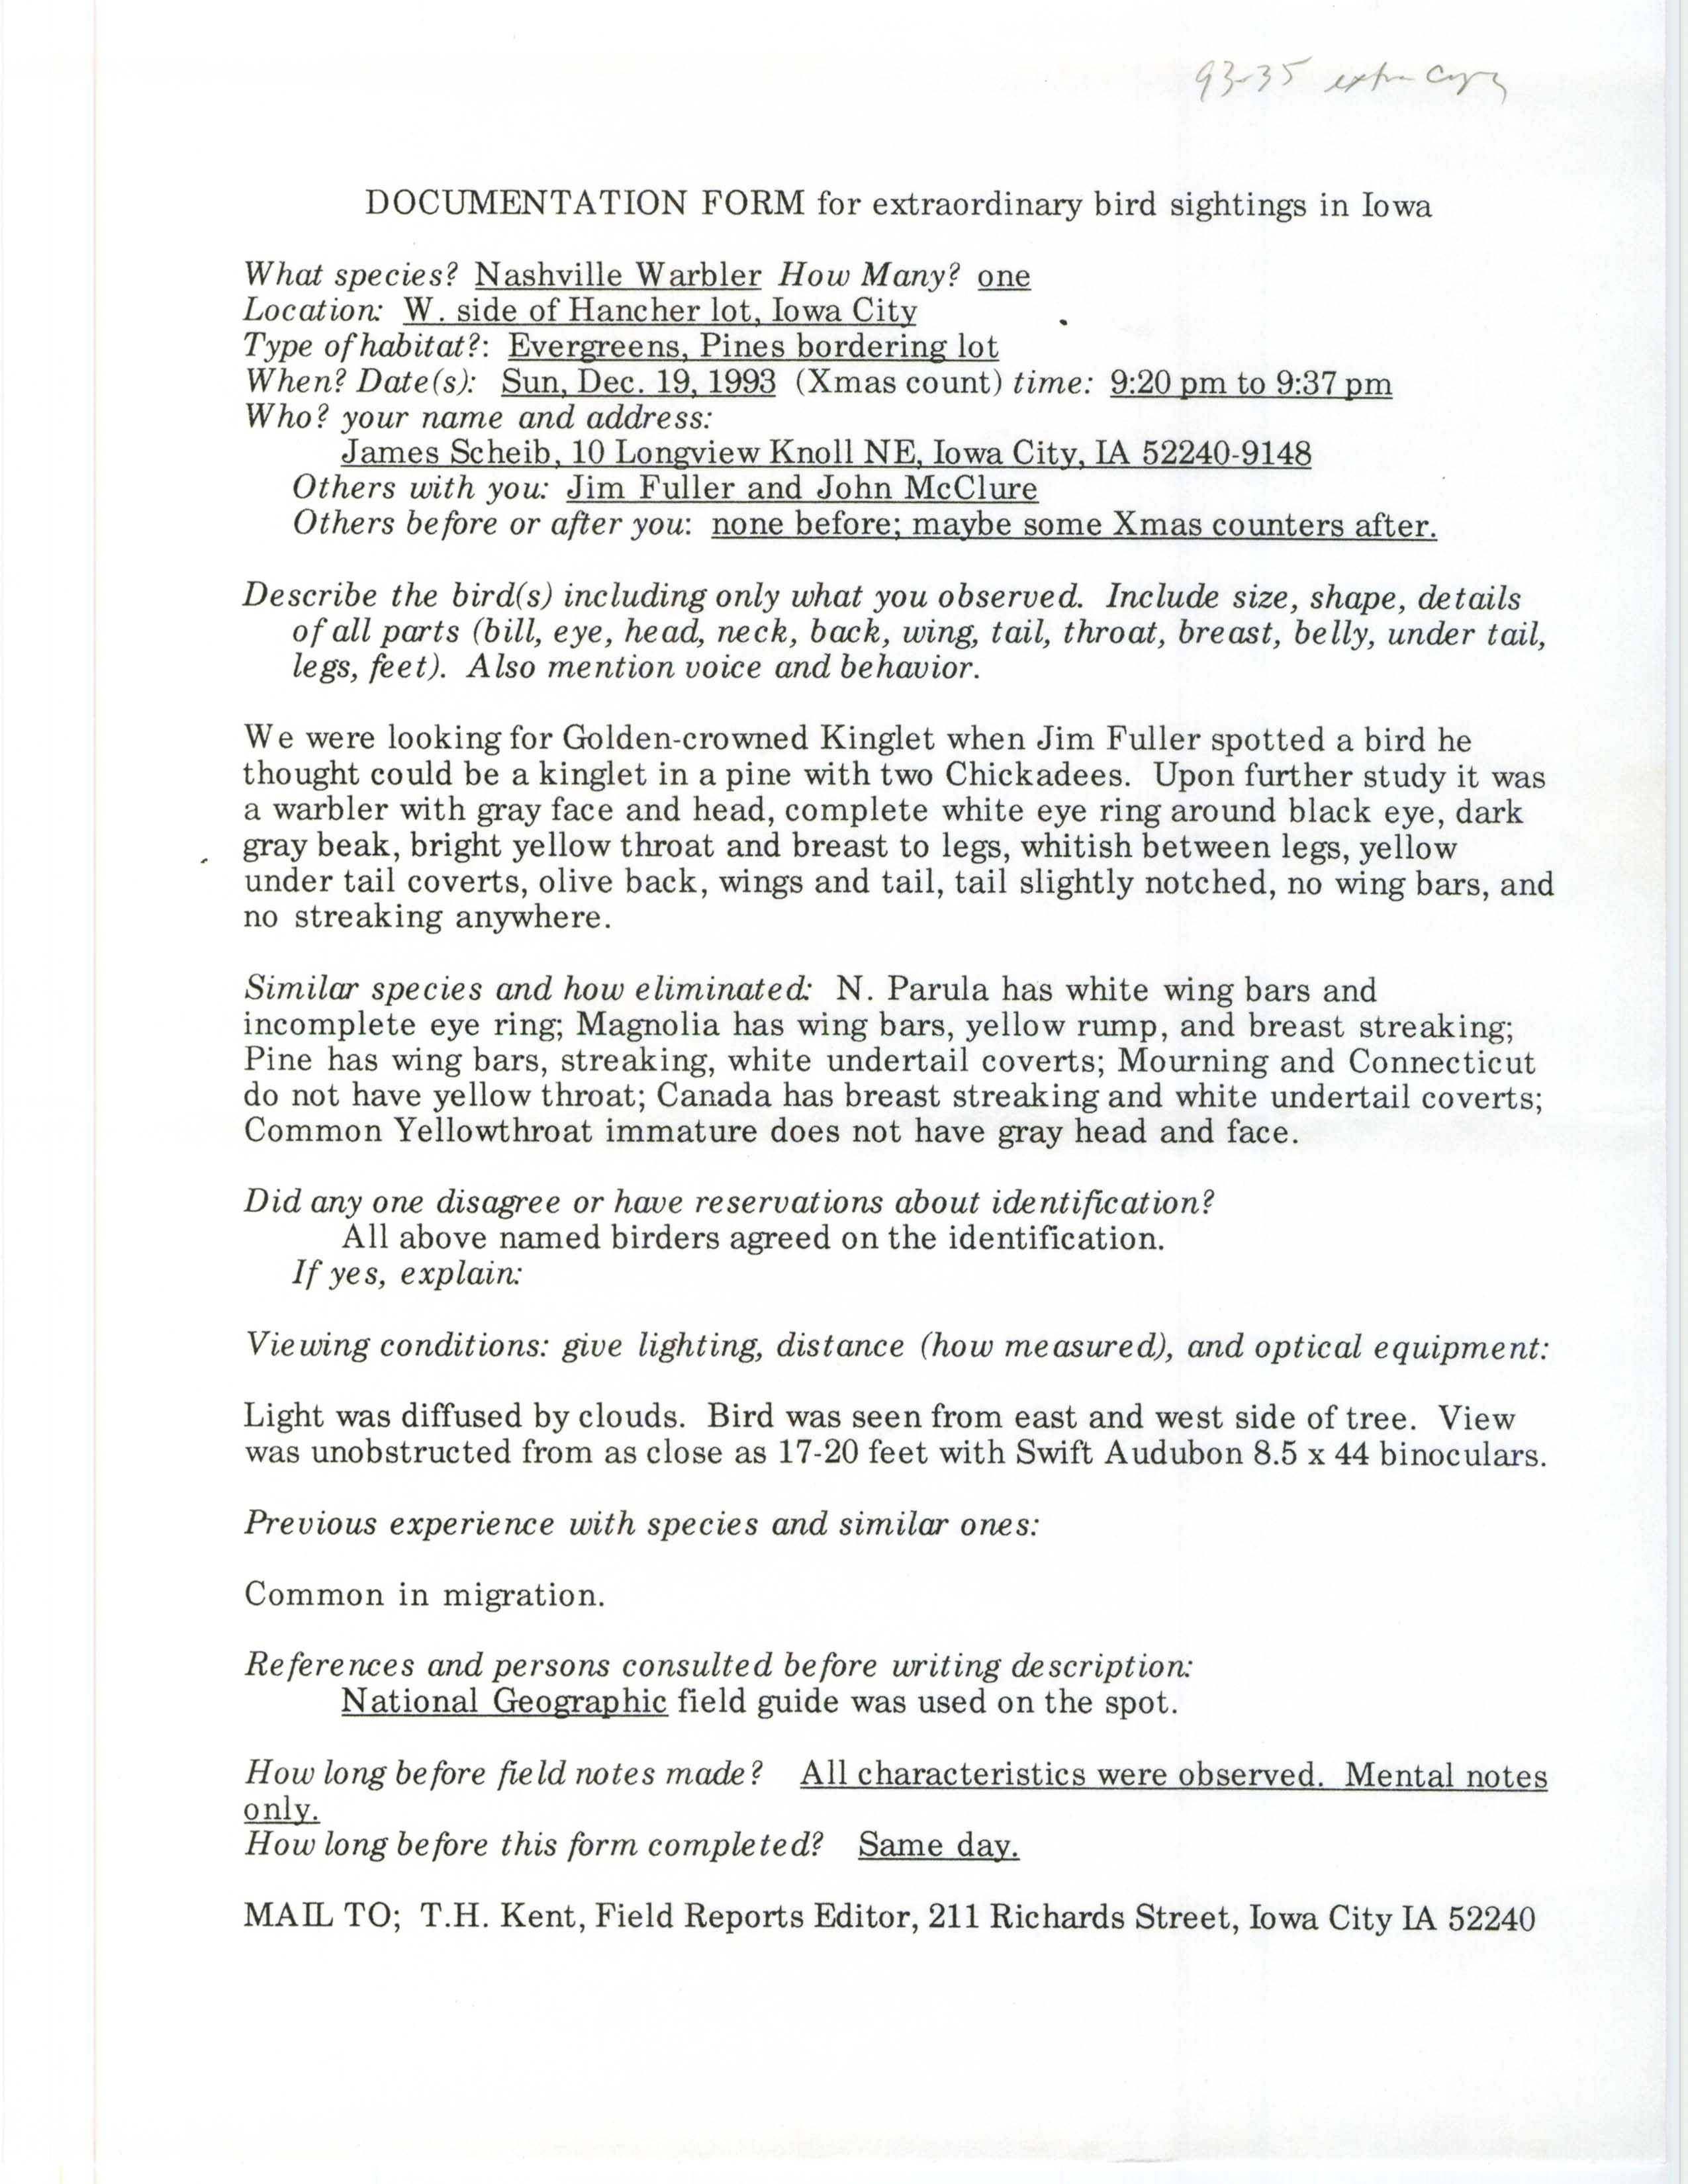 Rare bird documentation form for Nashville Warbler at Hancher Auditorium in Iowa City, 1993